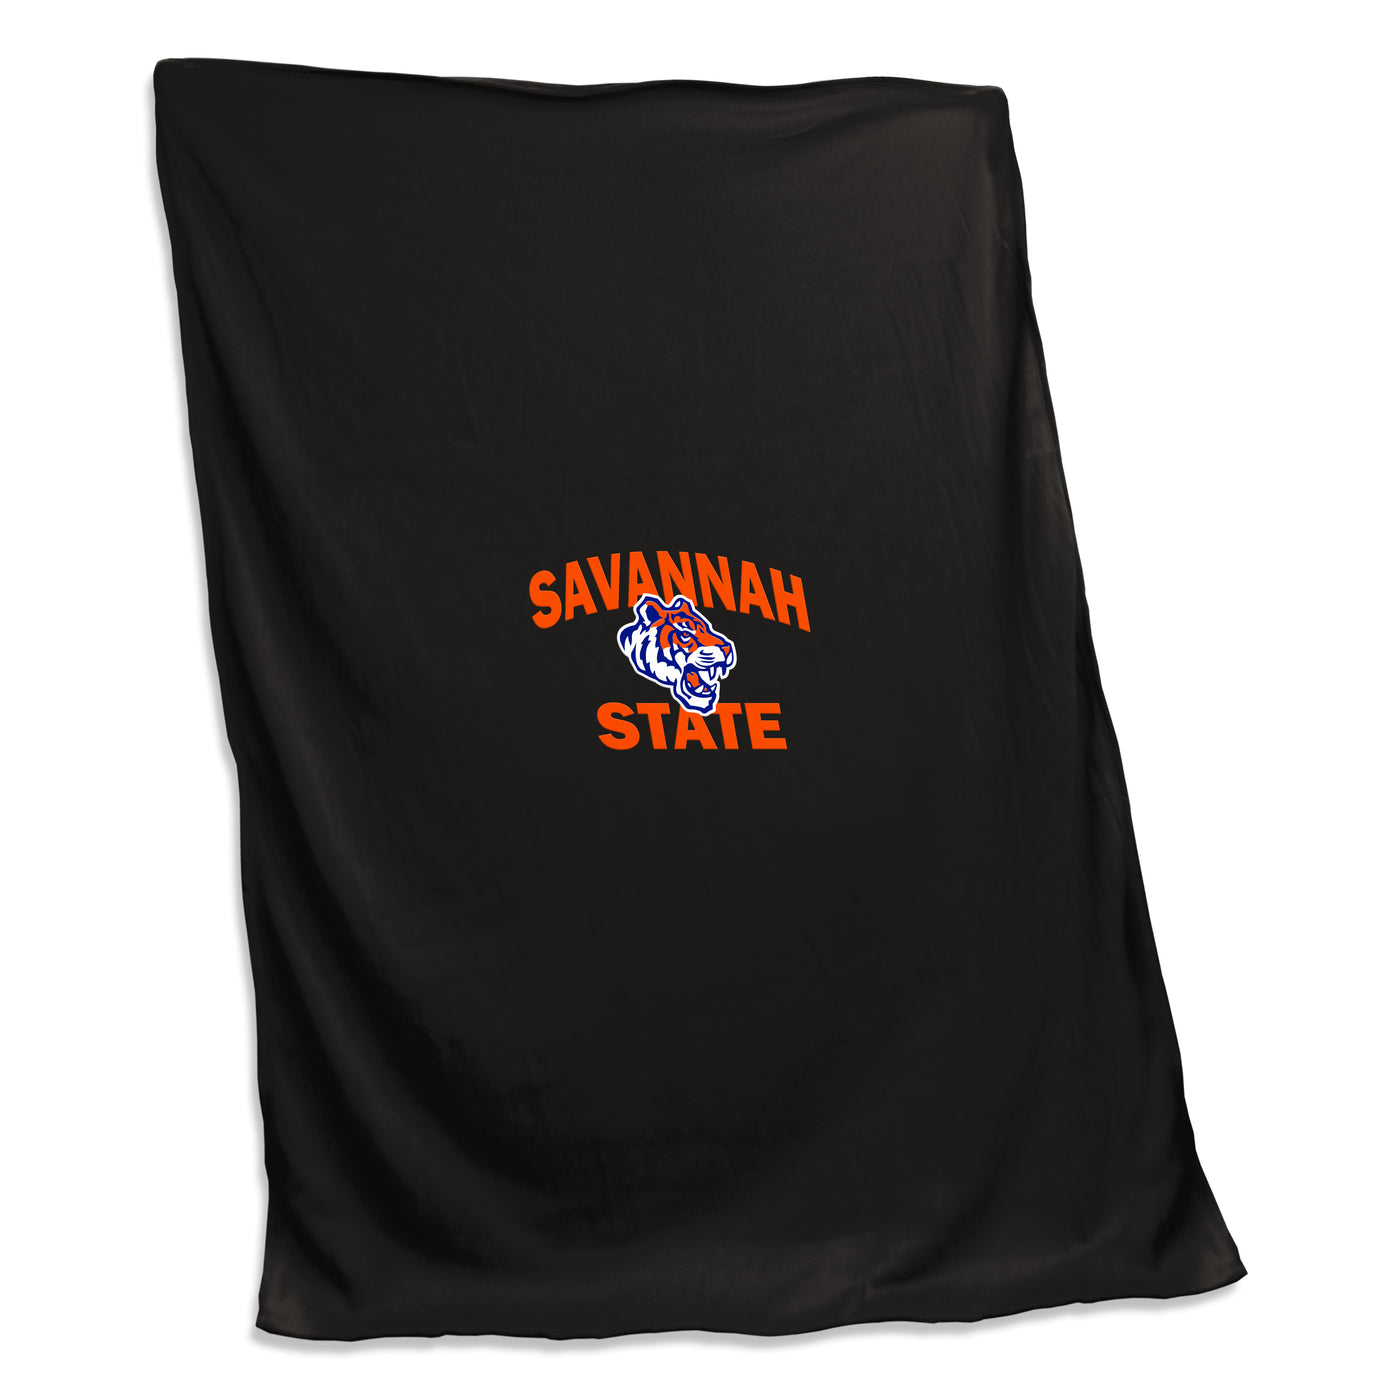 Savannah State Screened Sweatshirt Blanket